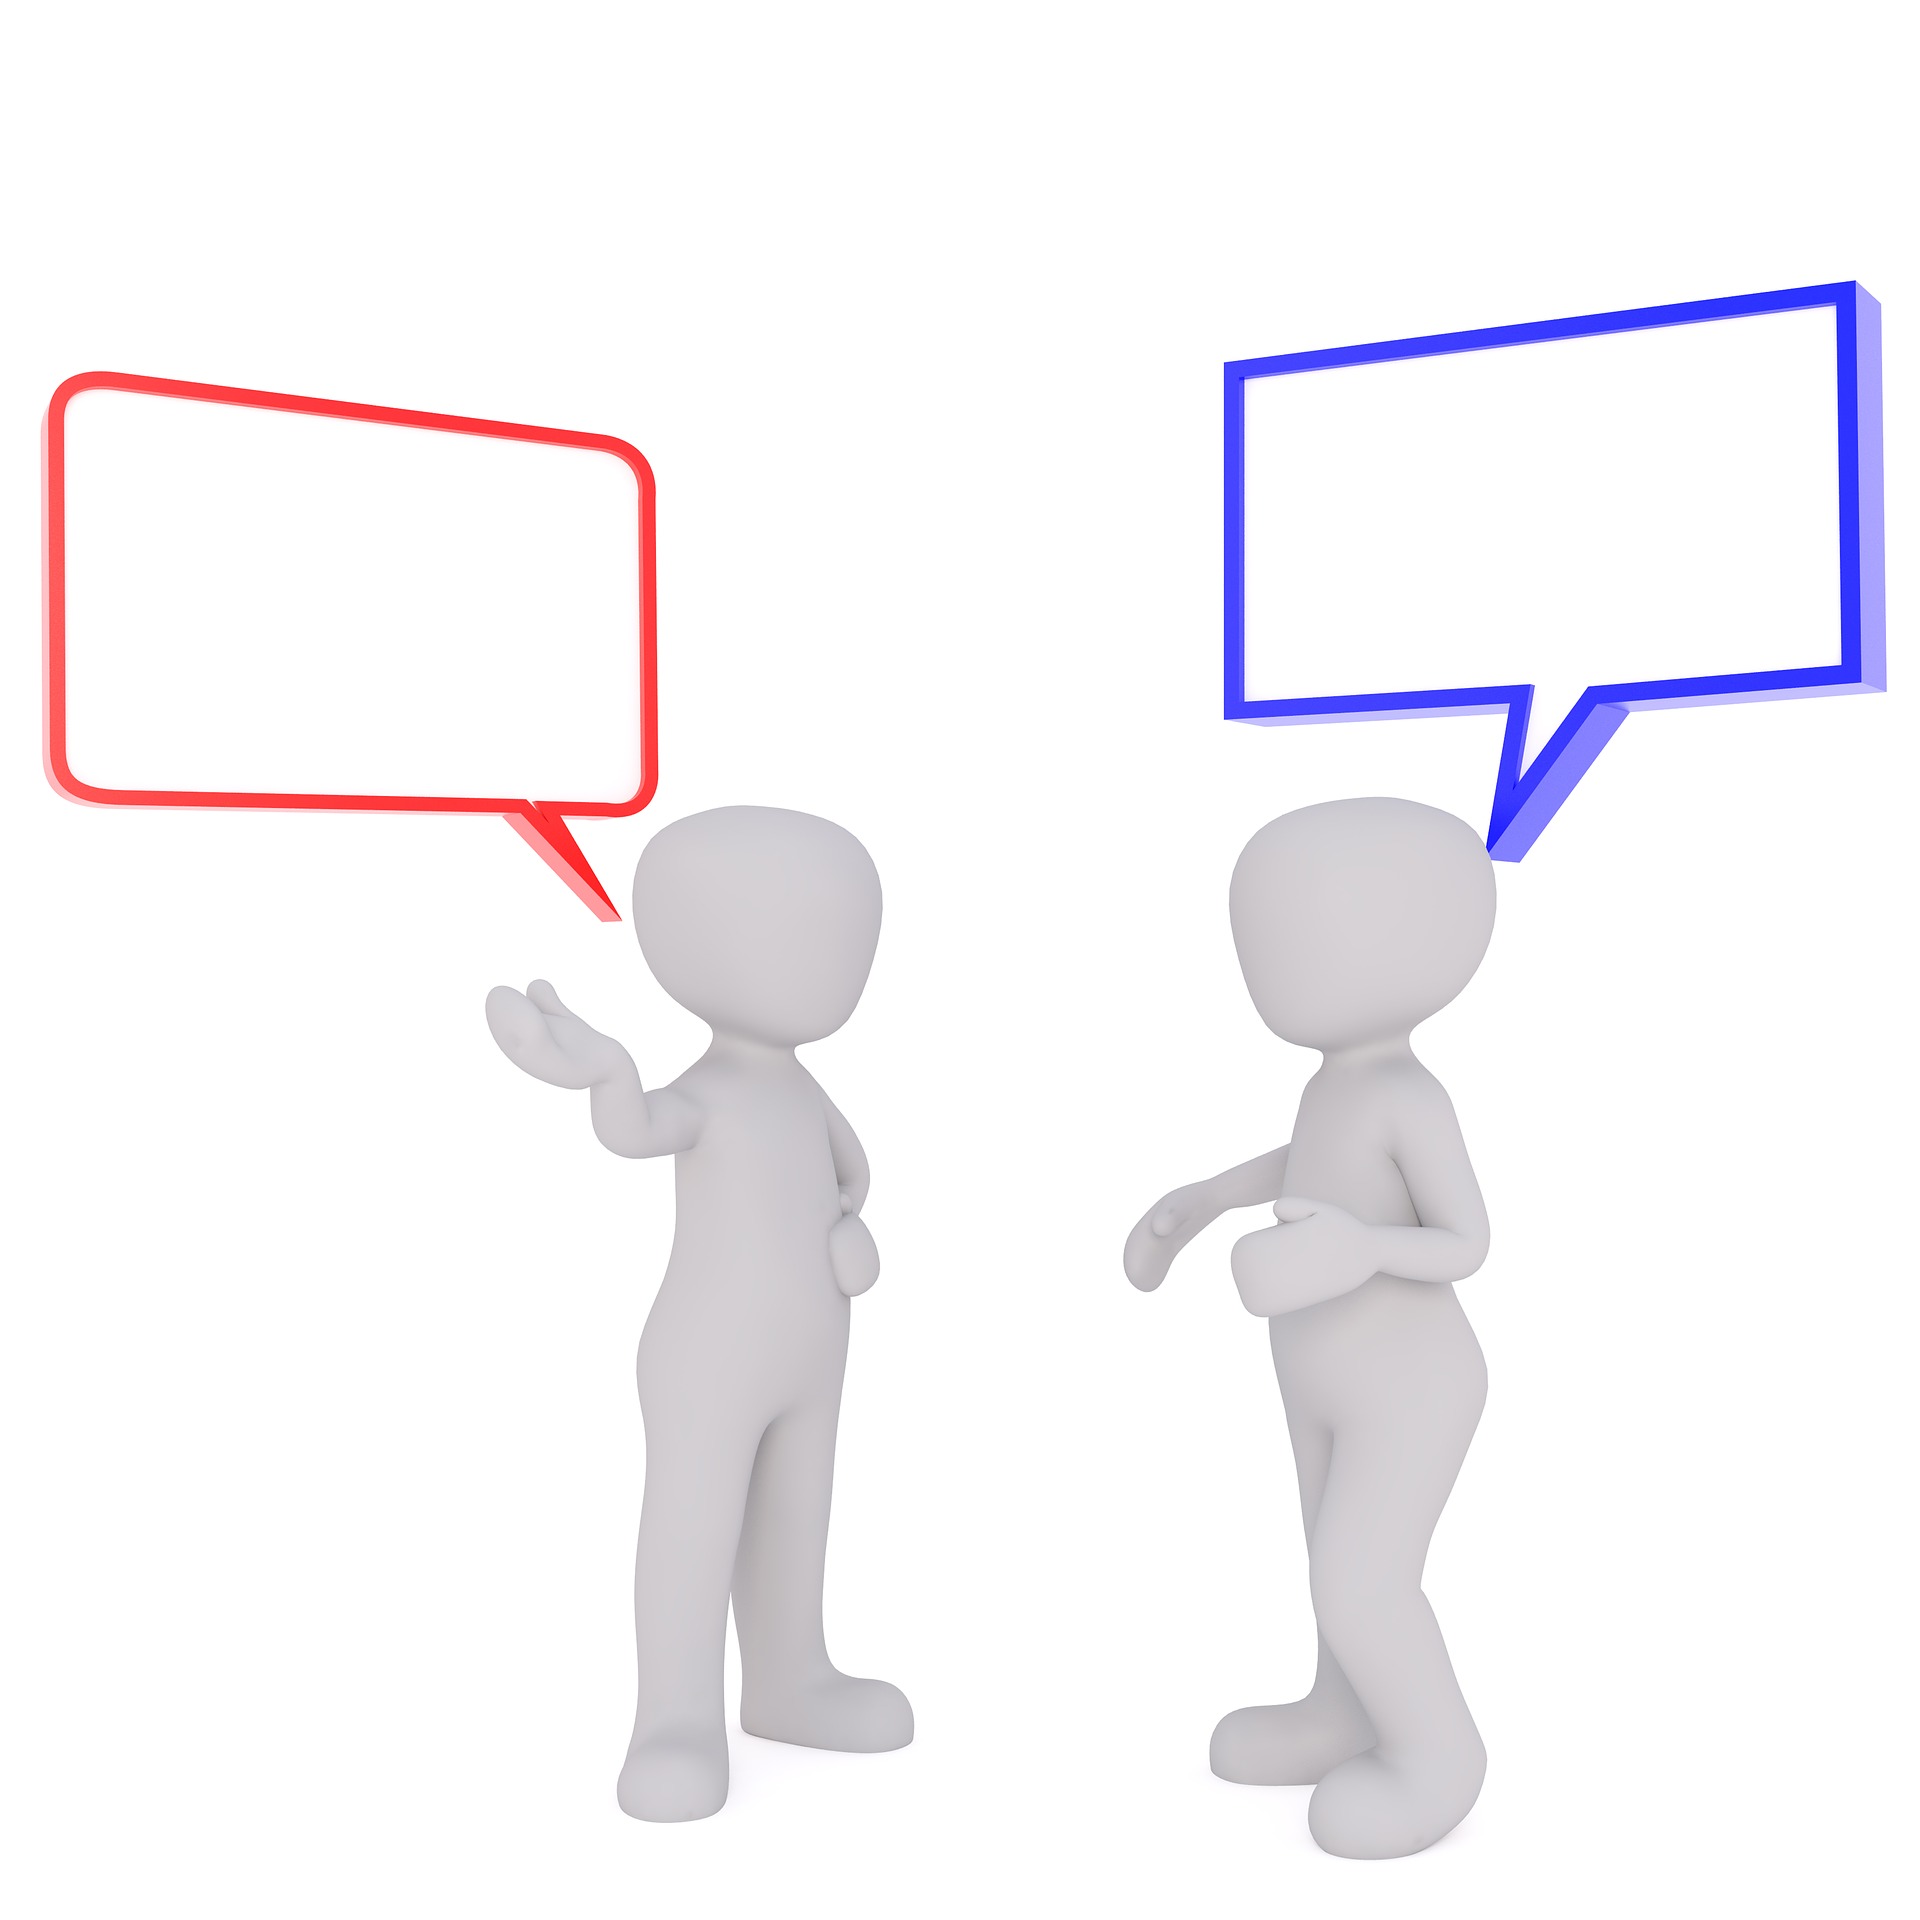 Imagen que simula la conversacion entre dos personas en Lengua de Signos